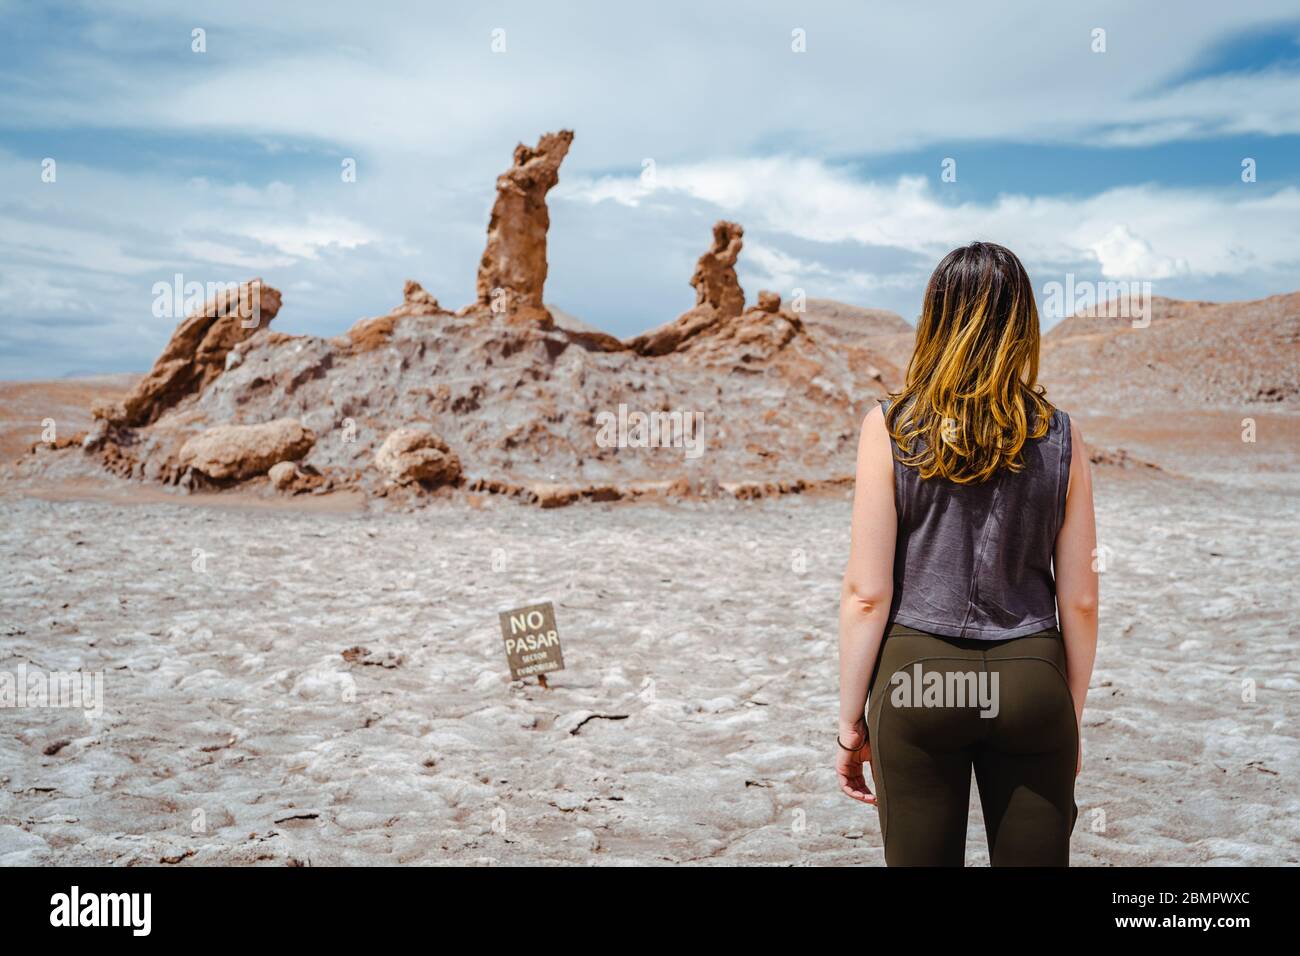 Weibliche Reisende auf Naturdenkmal drei Marias (Spanisch: Las Tres Marias) Felsformation am Mond-Tal in der Atacama-Wüste, Chile. Stockfoto